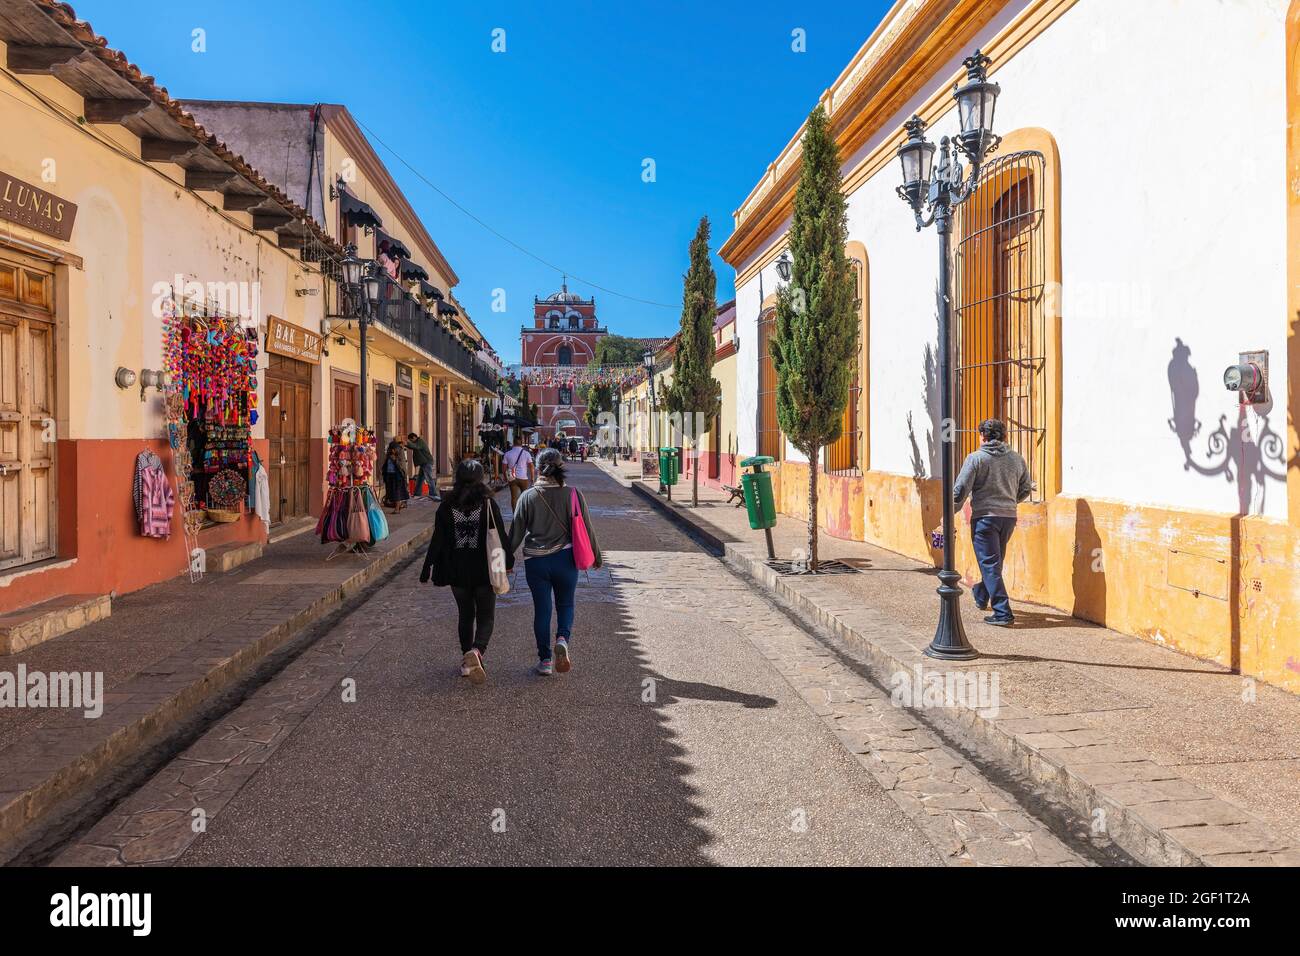 Menschen, die in einer farbenfrohen mexikanischen Straße im Kolonialstil in der Innenstadt von San Cristobal de las Casas, Chiapas, Mexiko, spazieren gehen. Stockfoto